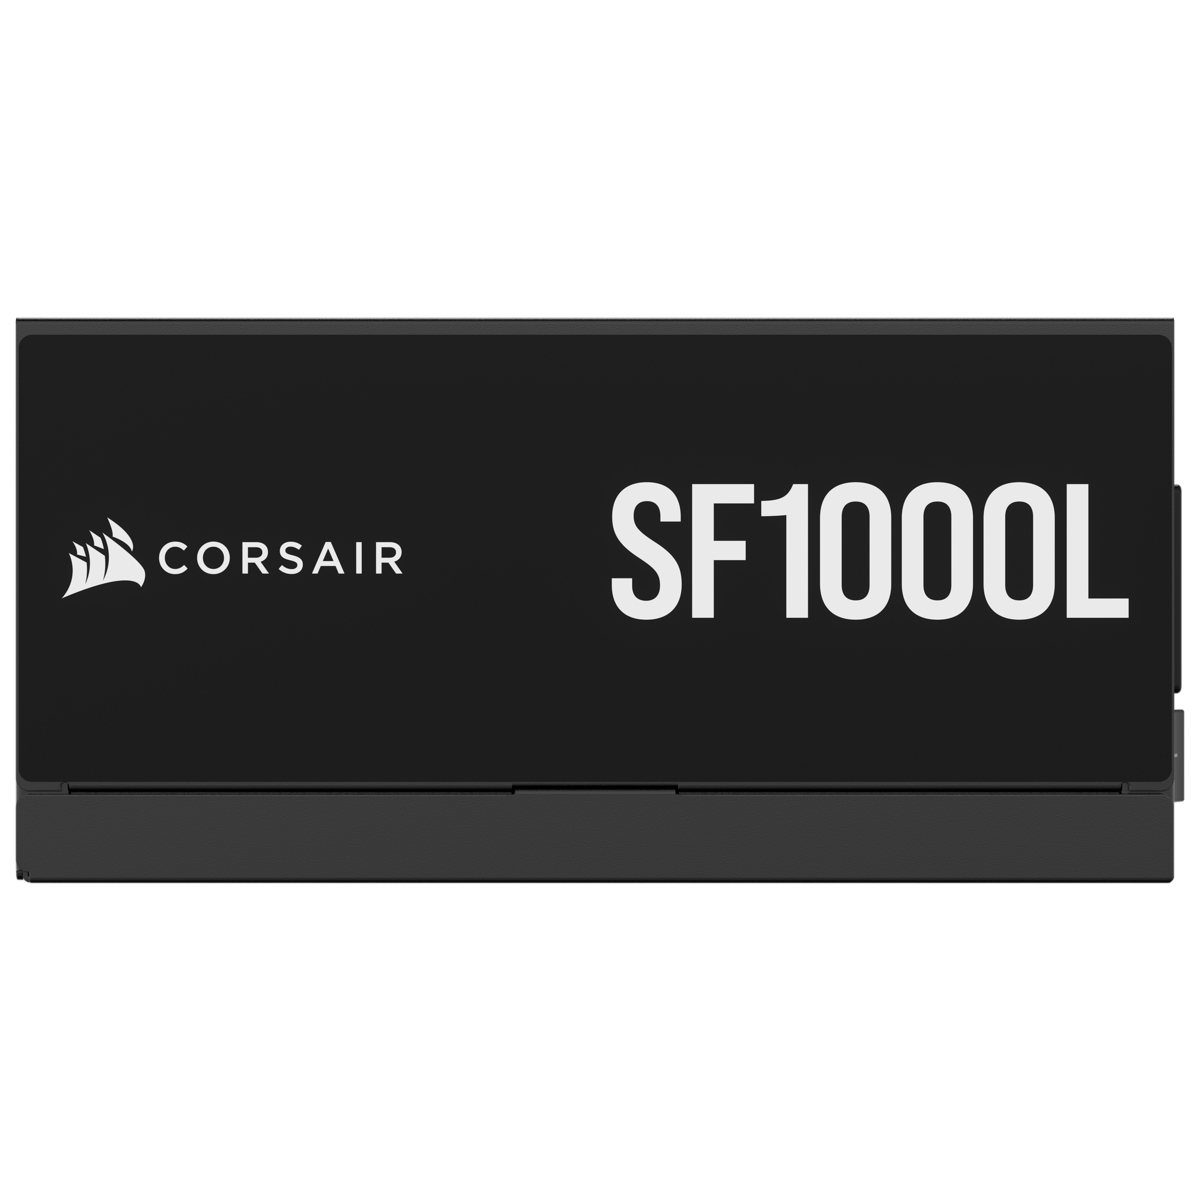 Corsair - Fuente Alimentación Modular SFX Corsair SF1000L